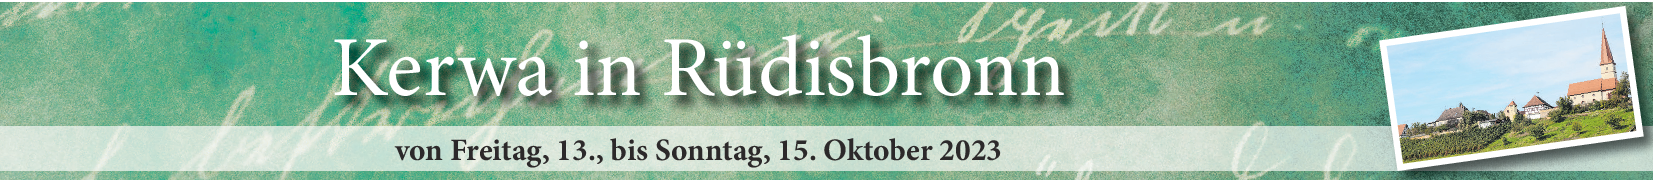 Kerwa in Rüdisbronn vom 13.-15. Oktober: „Resbrunn“ lädt zum gemütlichen Feiern ein